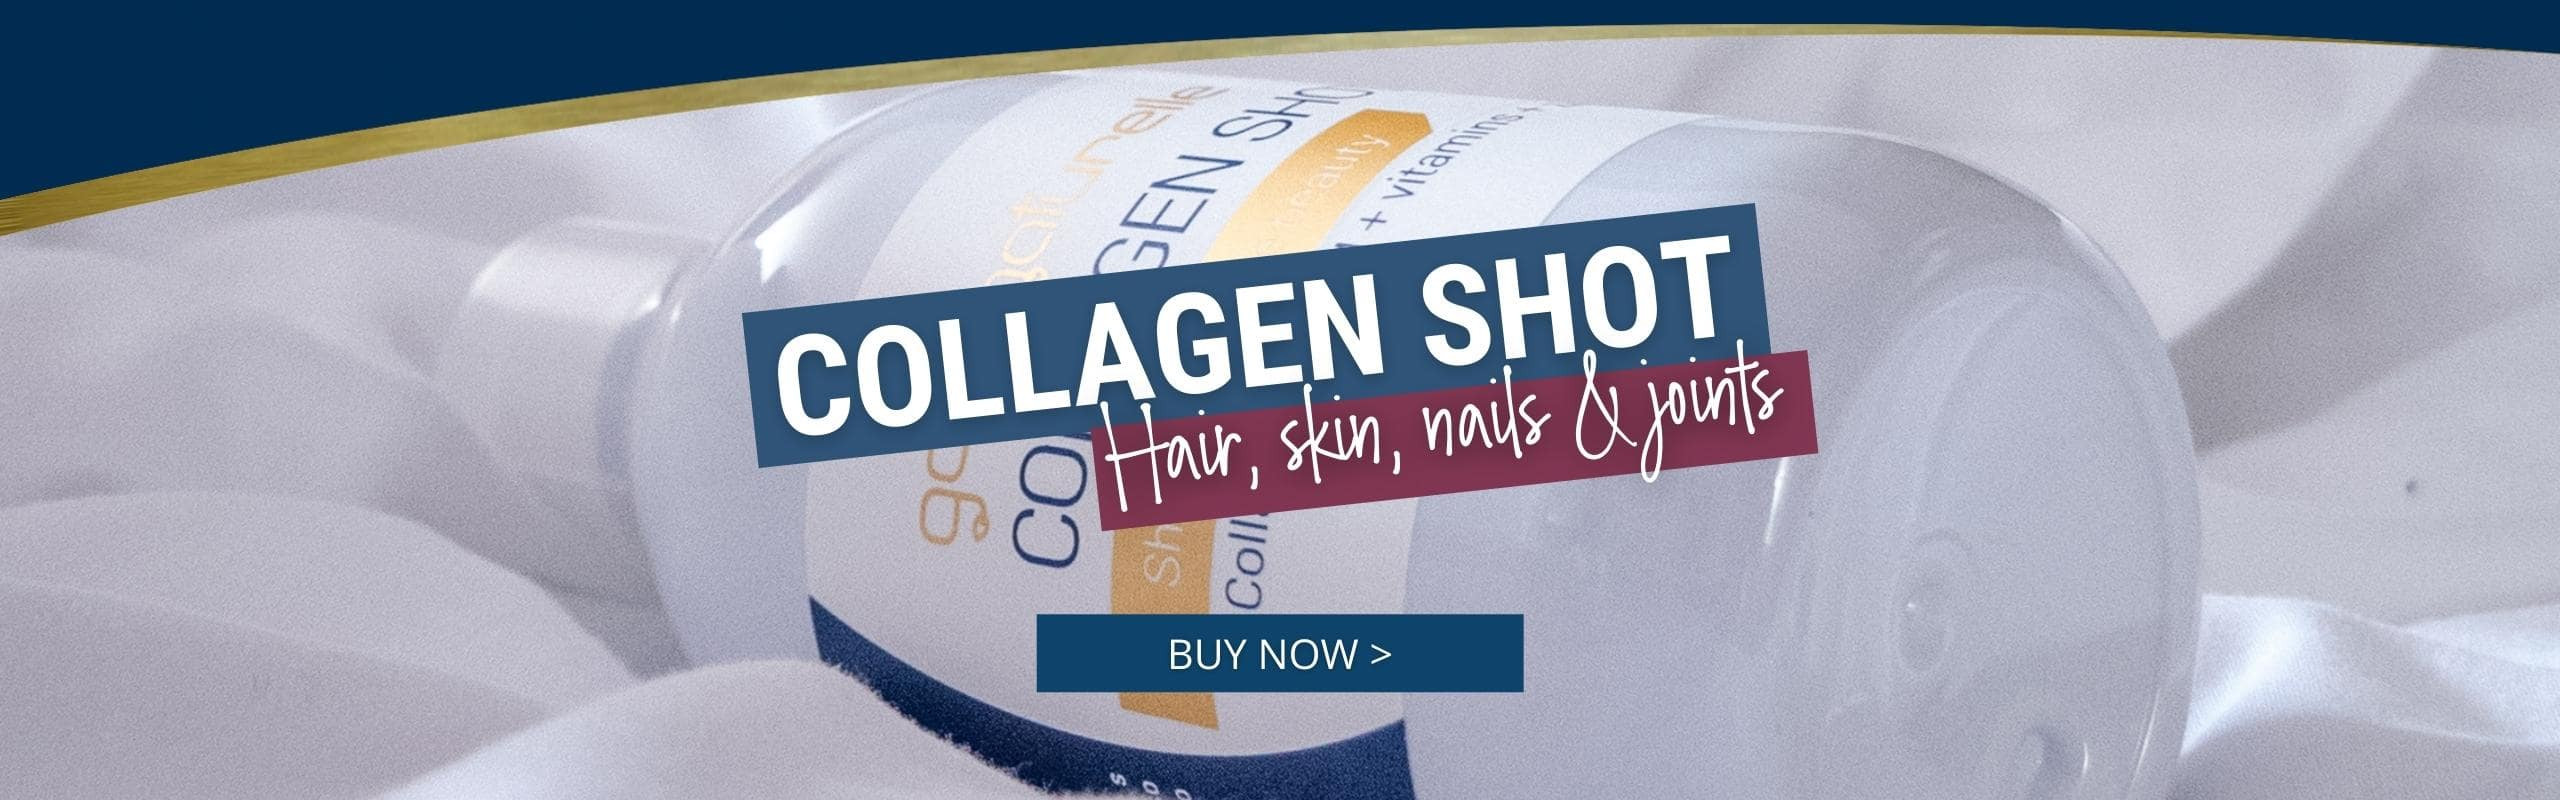 COllagen shot